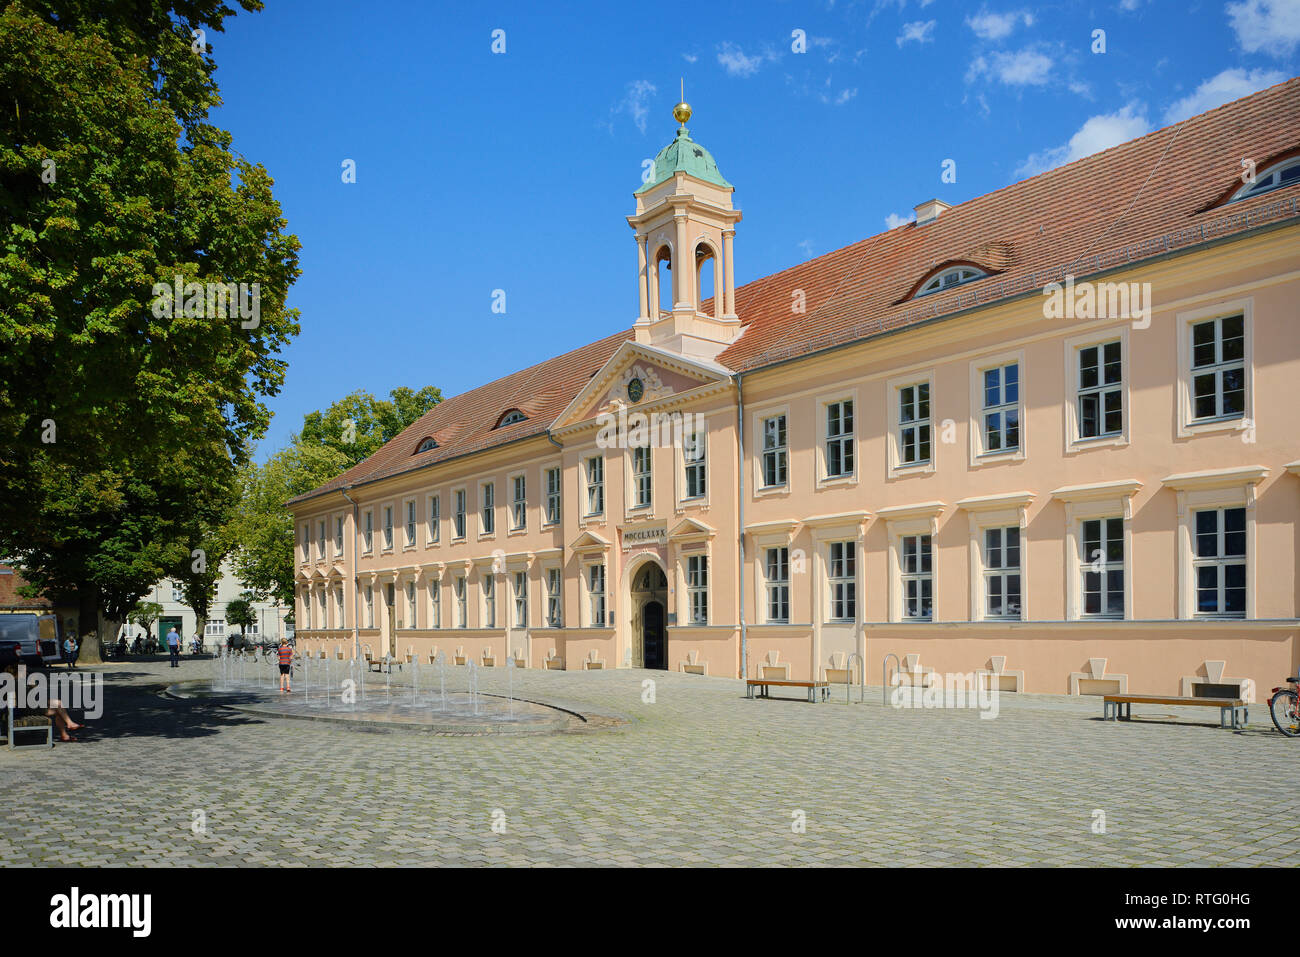 Altes Gymnasium, Old Grammar School, Old High School, Schulplatz square, Neuruppin, Brandenburg, Germany Stock Photo